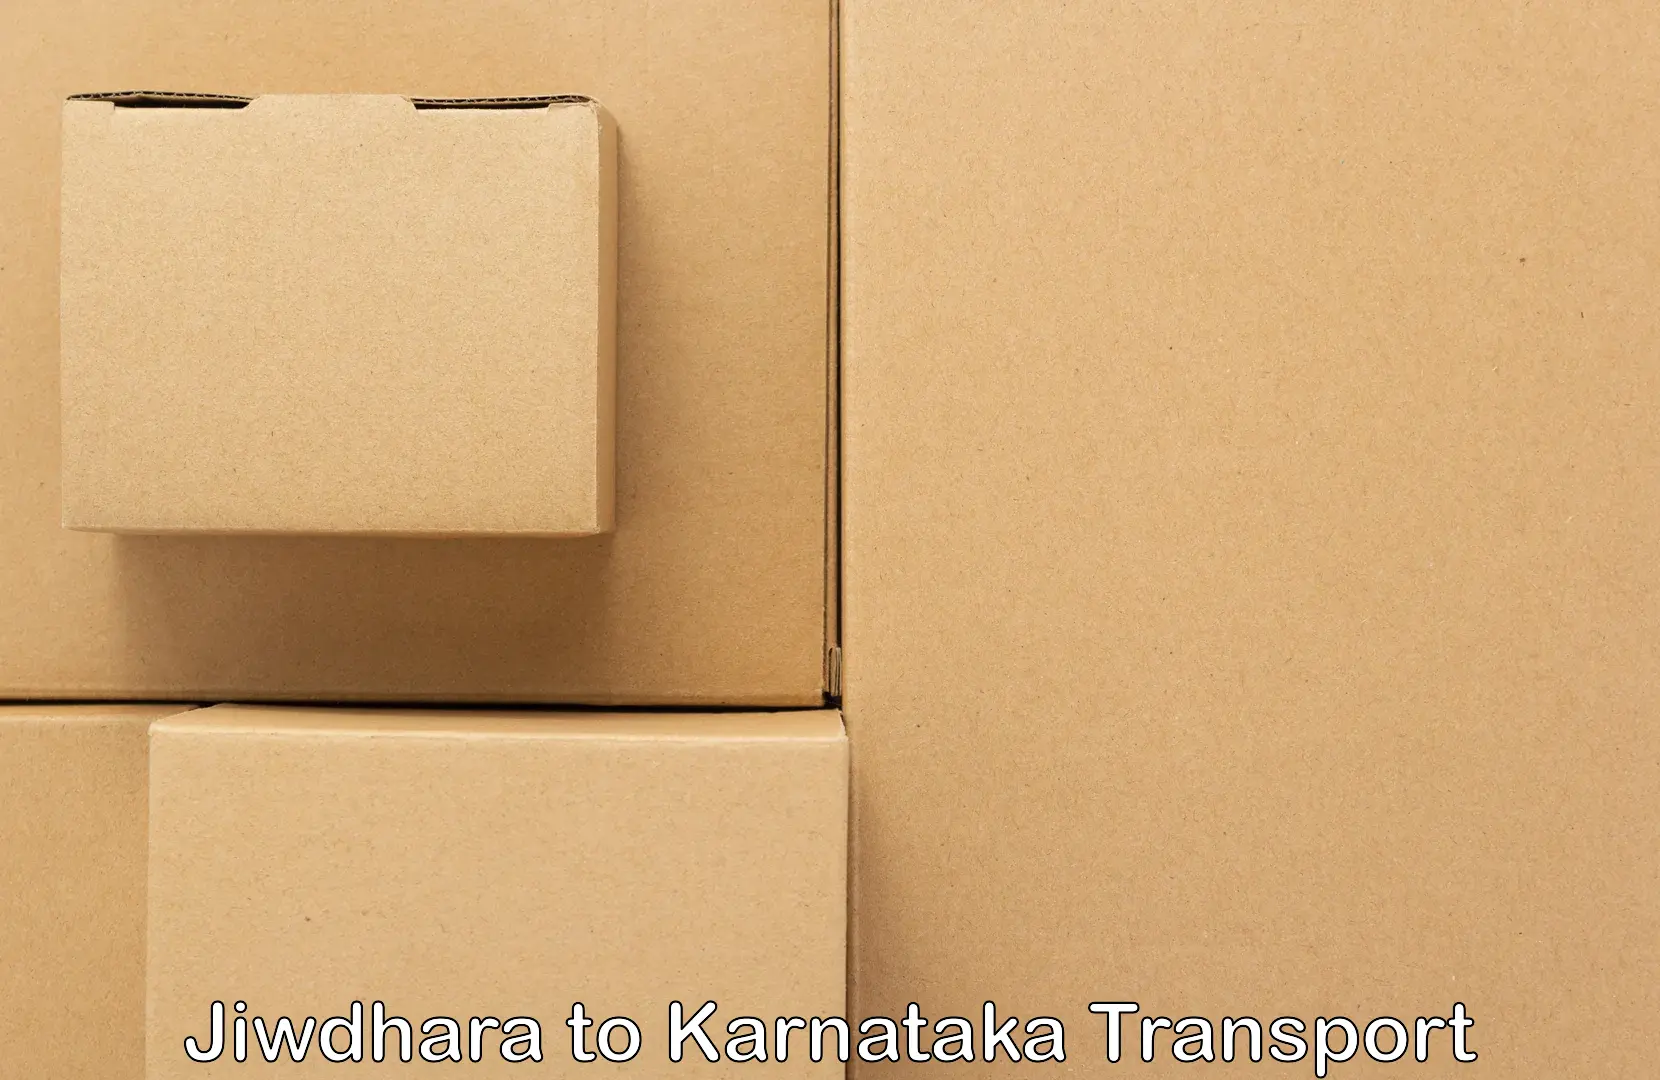 Land transport services Jiwdhara to Dakshina Kannada